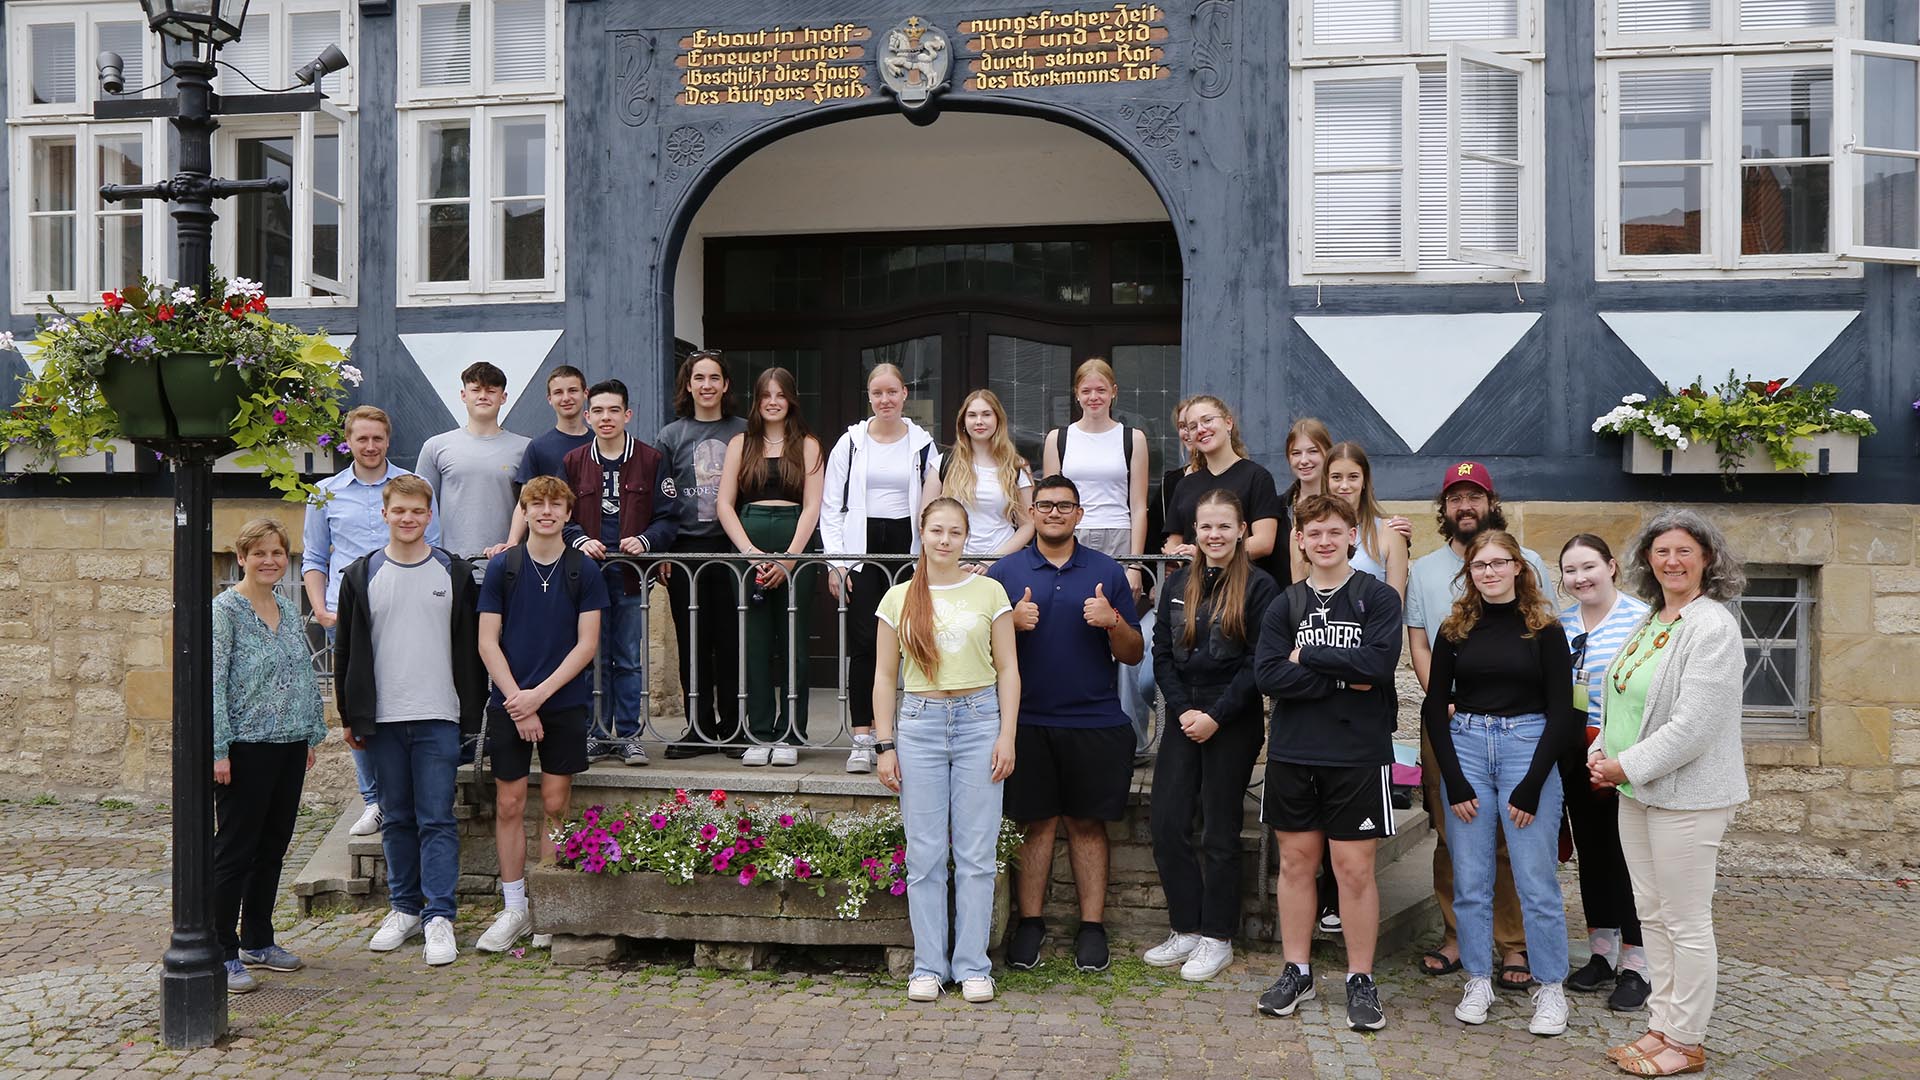 Gruppenfoto von rund 25 Schülerinnen und Schülern und Lehrkräften auf der Treppe vor dem Wolfenbütteler Rathaus.